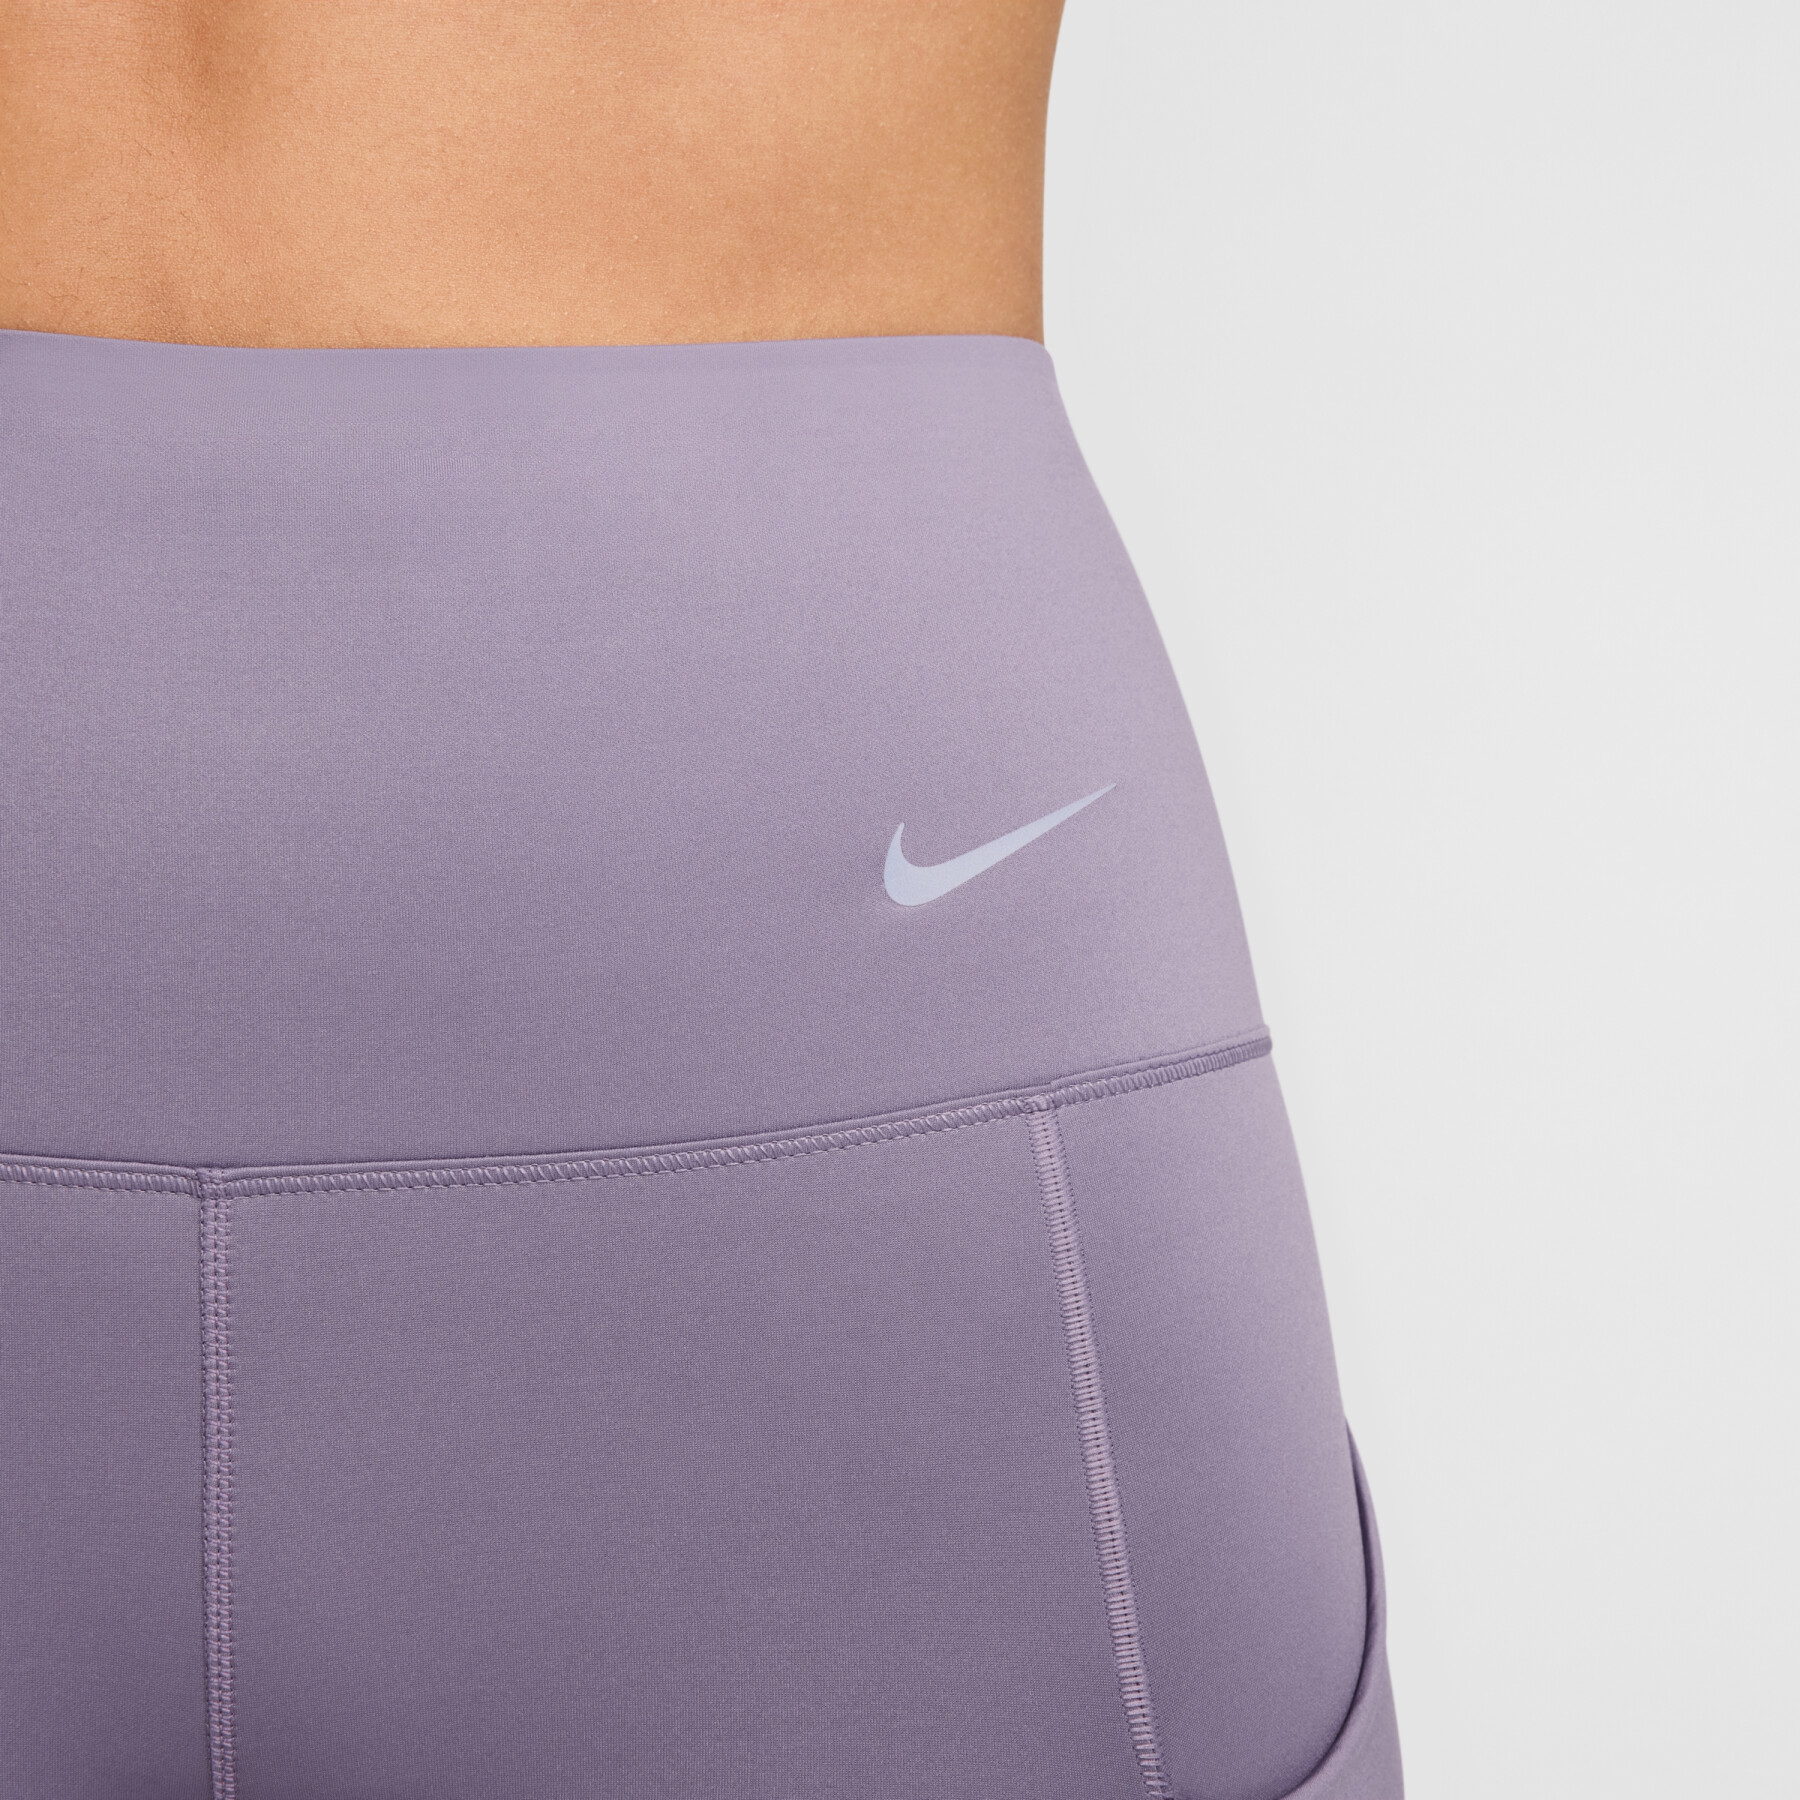 Women's leggings Nike Go